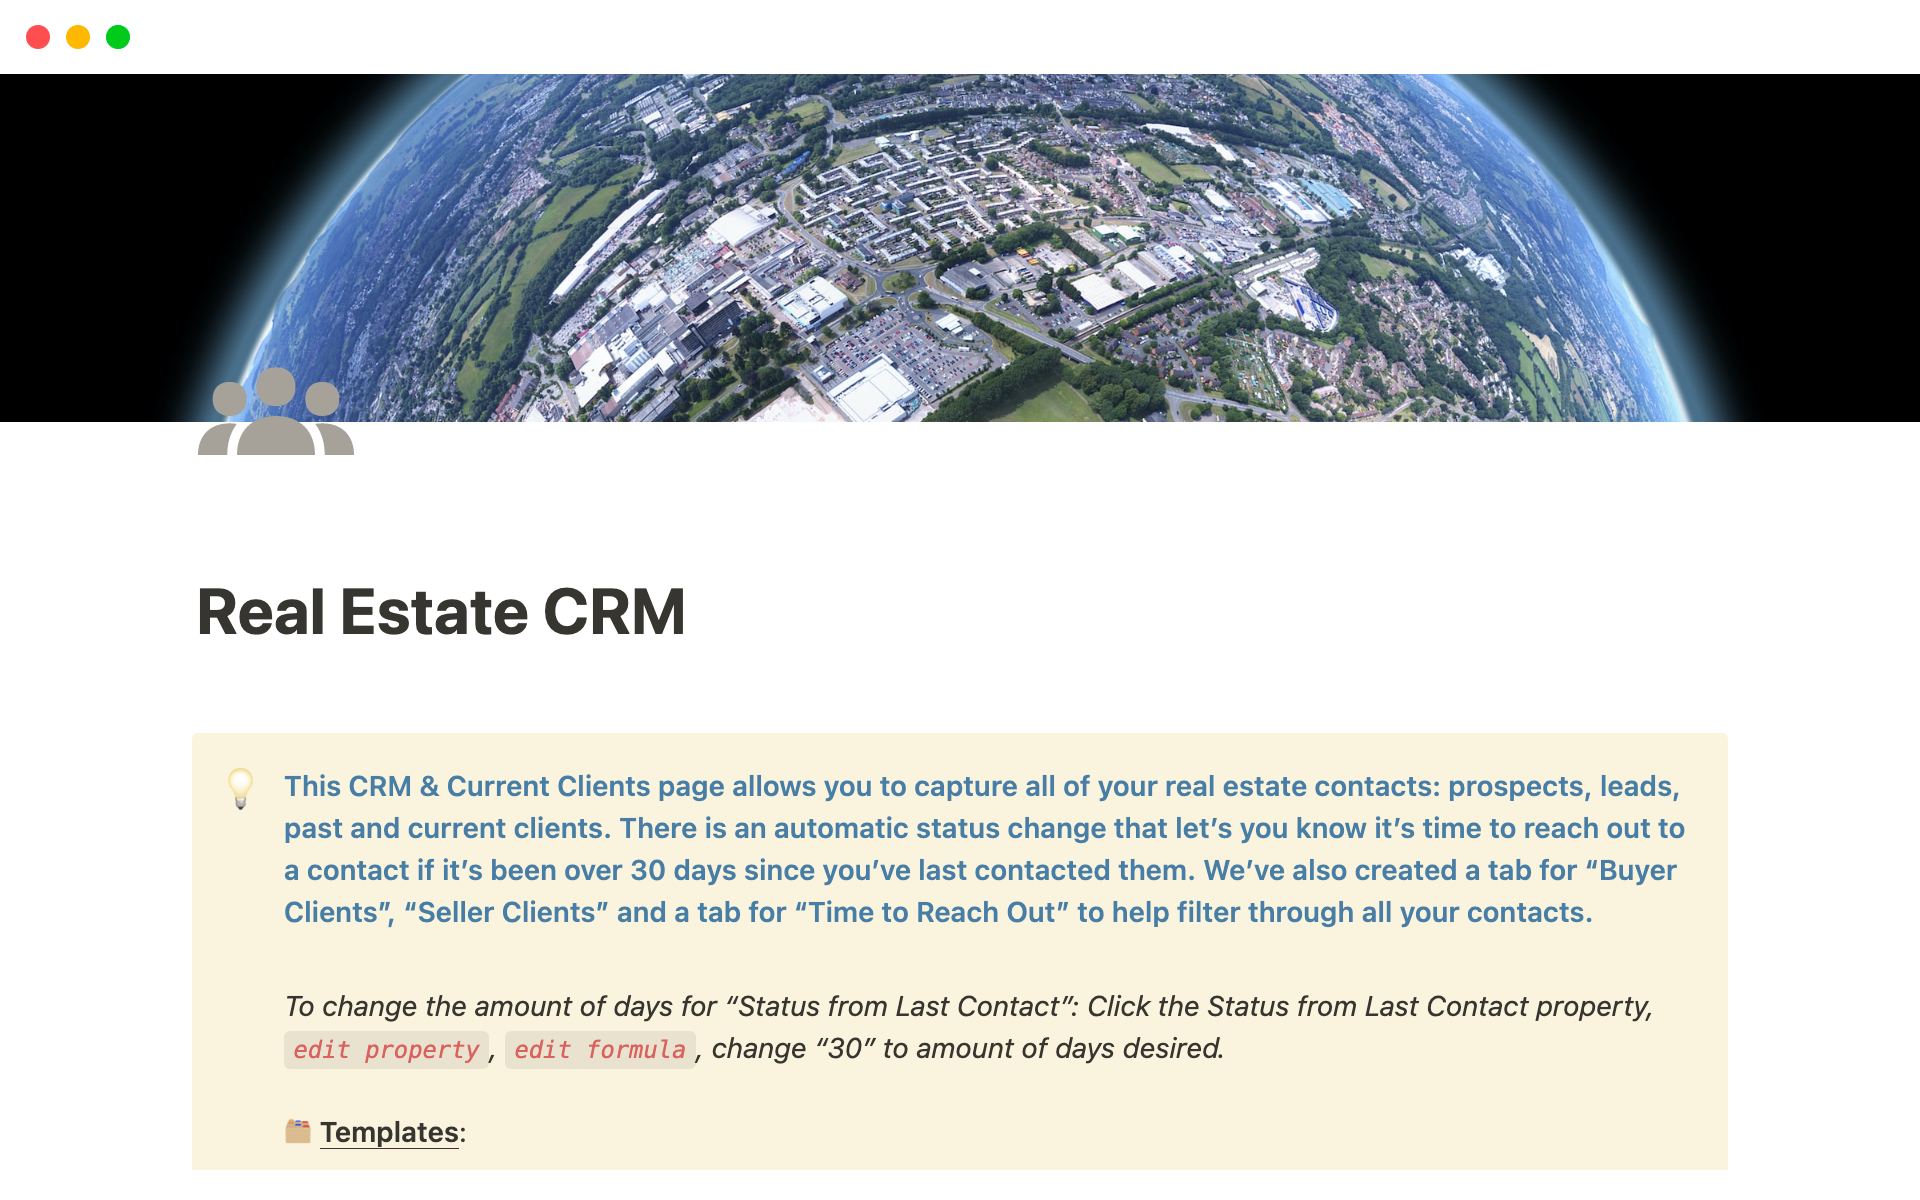 Aperçu du modèle de Real Estate CRM